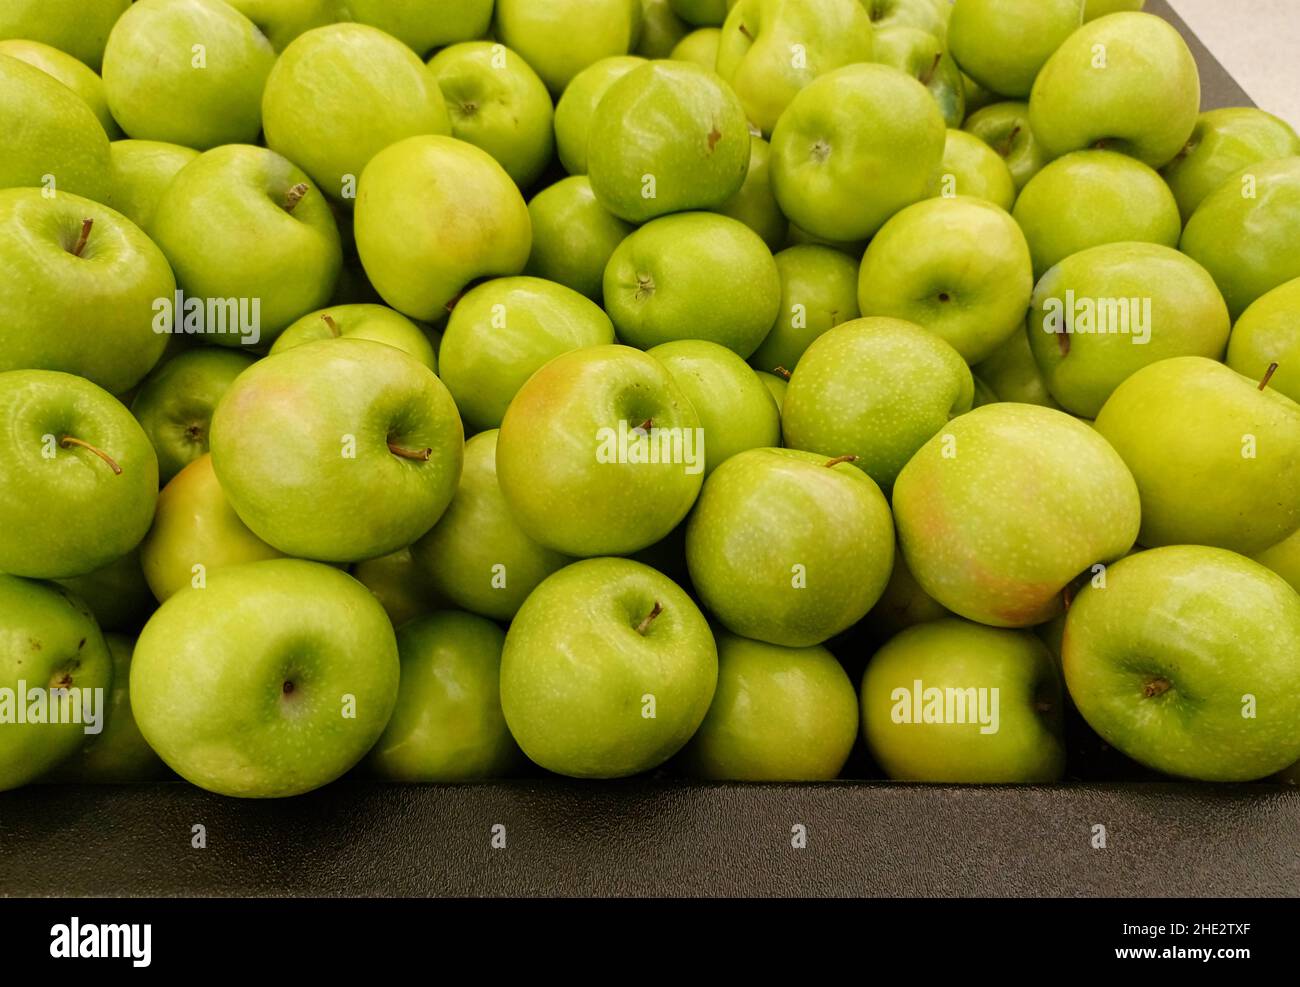 Reife Äpfel von Granny Smith, lose verstreut in einem traditionellen  Gemüsemarkt, Nahaufnahme Stockfotografie - Alamy